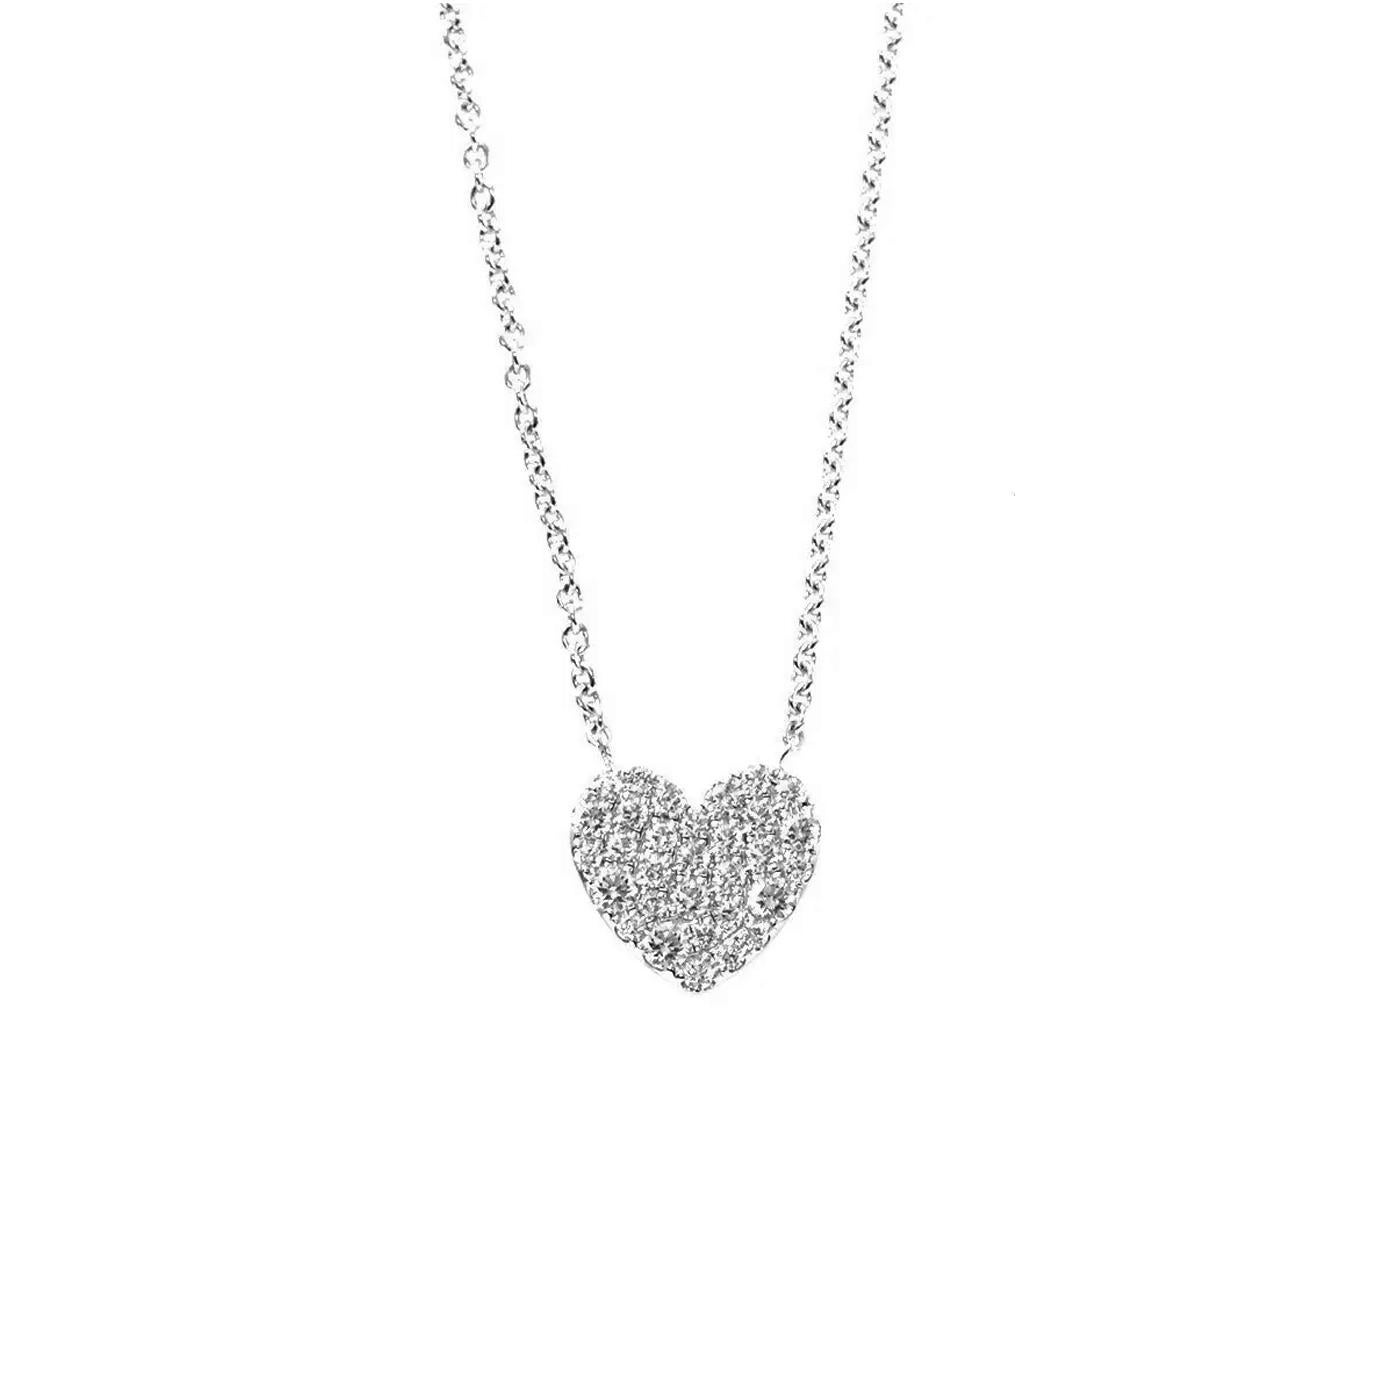 Tiffany & Co. 90187420 pendentif en diamant pavé cœur métro. Ce motif célèbre l'esprit de l'amour. Des diamants chatoyants accentuent les courbes élégantes de ce pendentif. Fabriqué en or blanc 18k avec des diamants ronds de taille brillante sertis